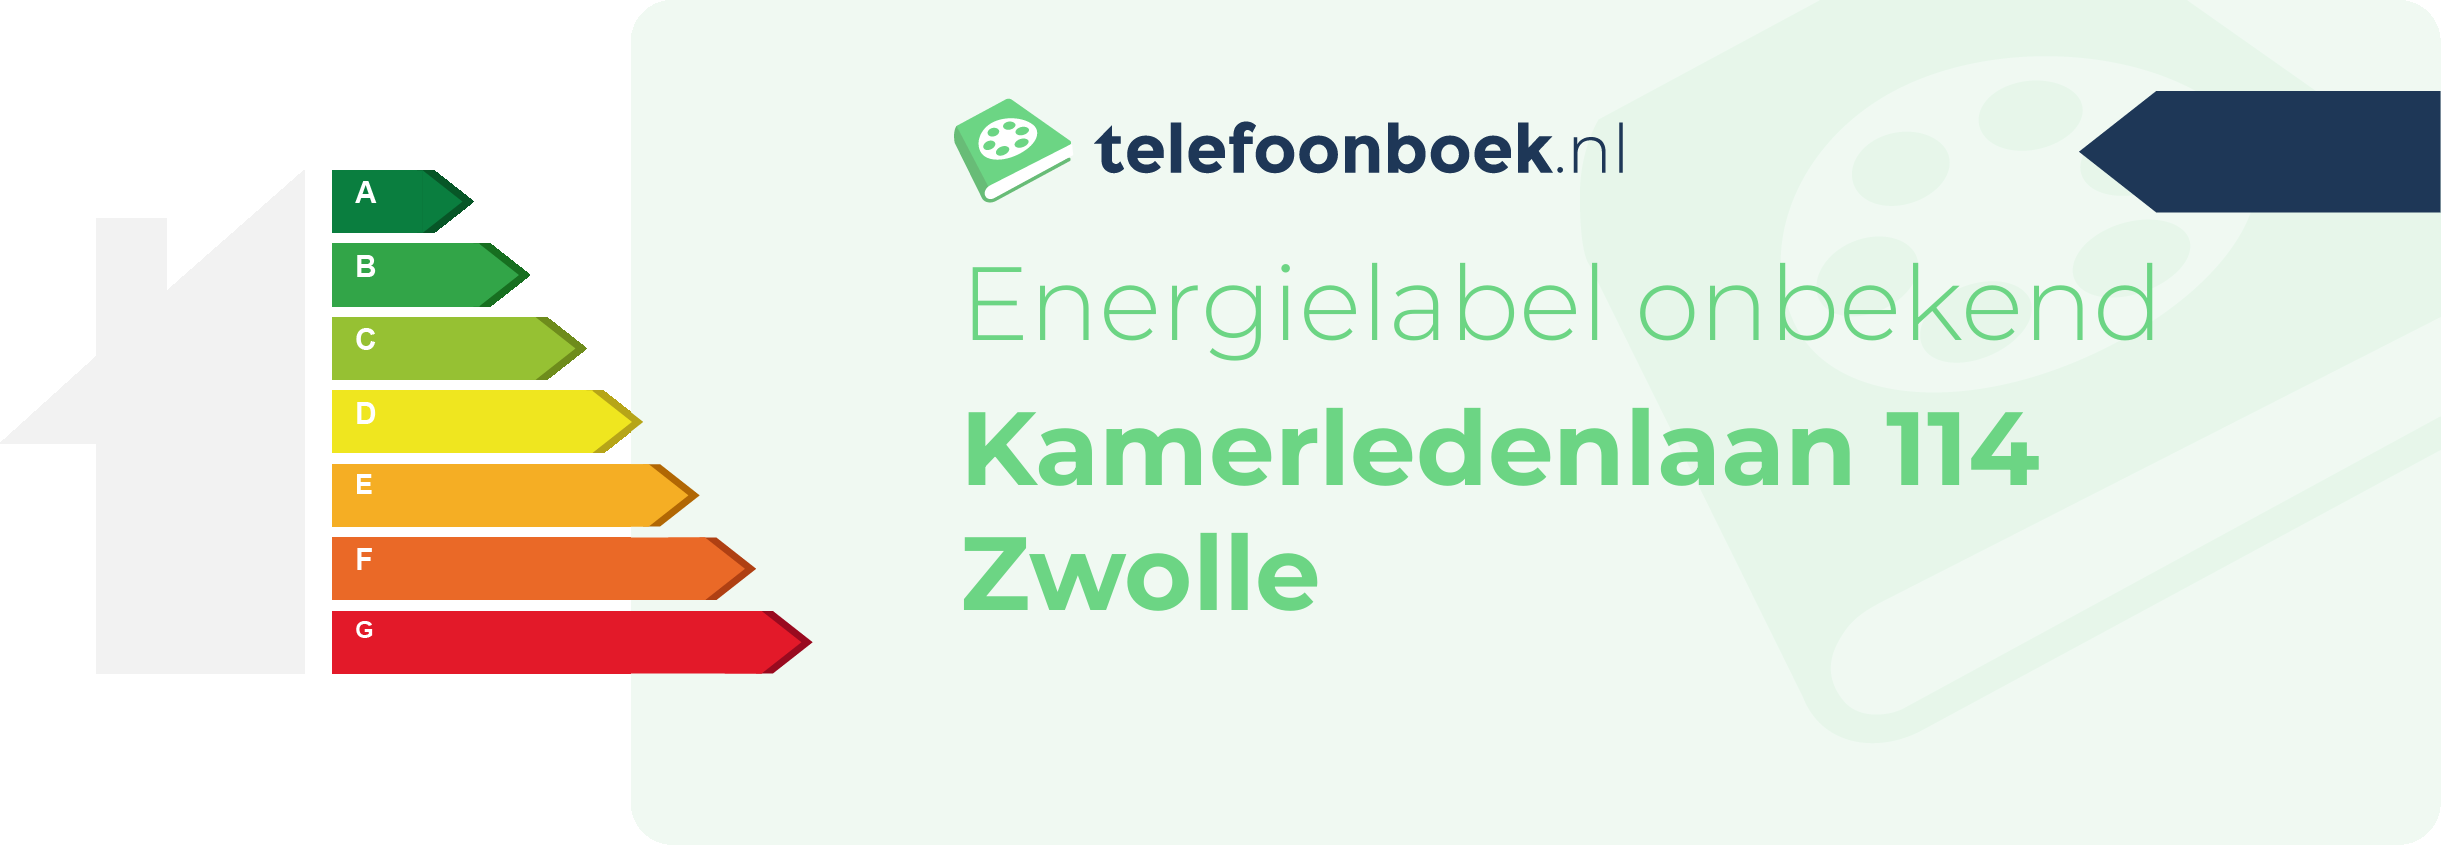 Energielabel Kamerledenlaan 114 Zwolle